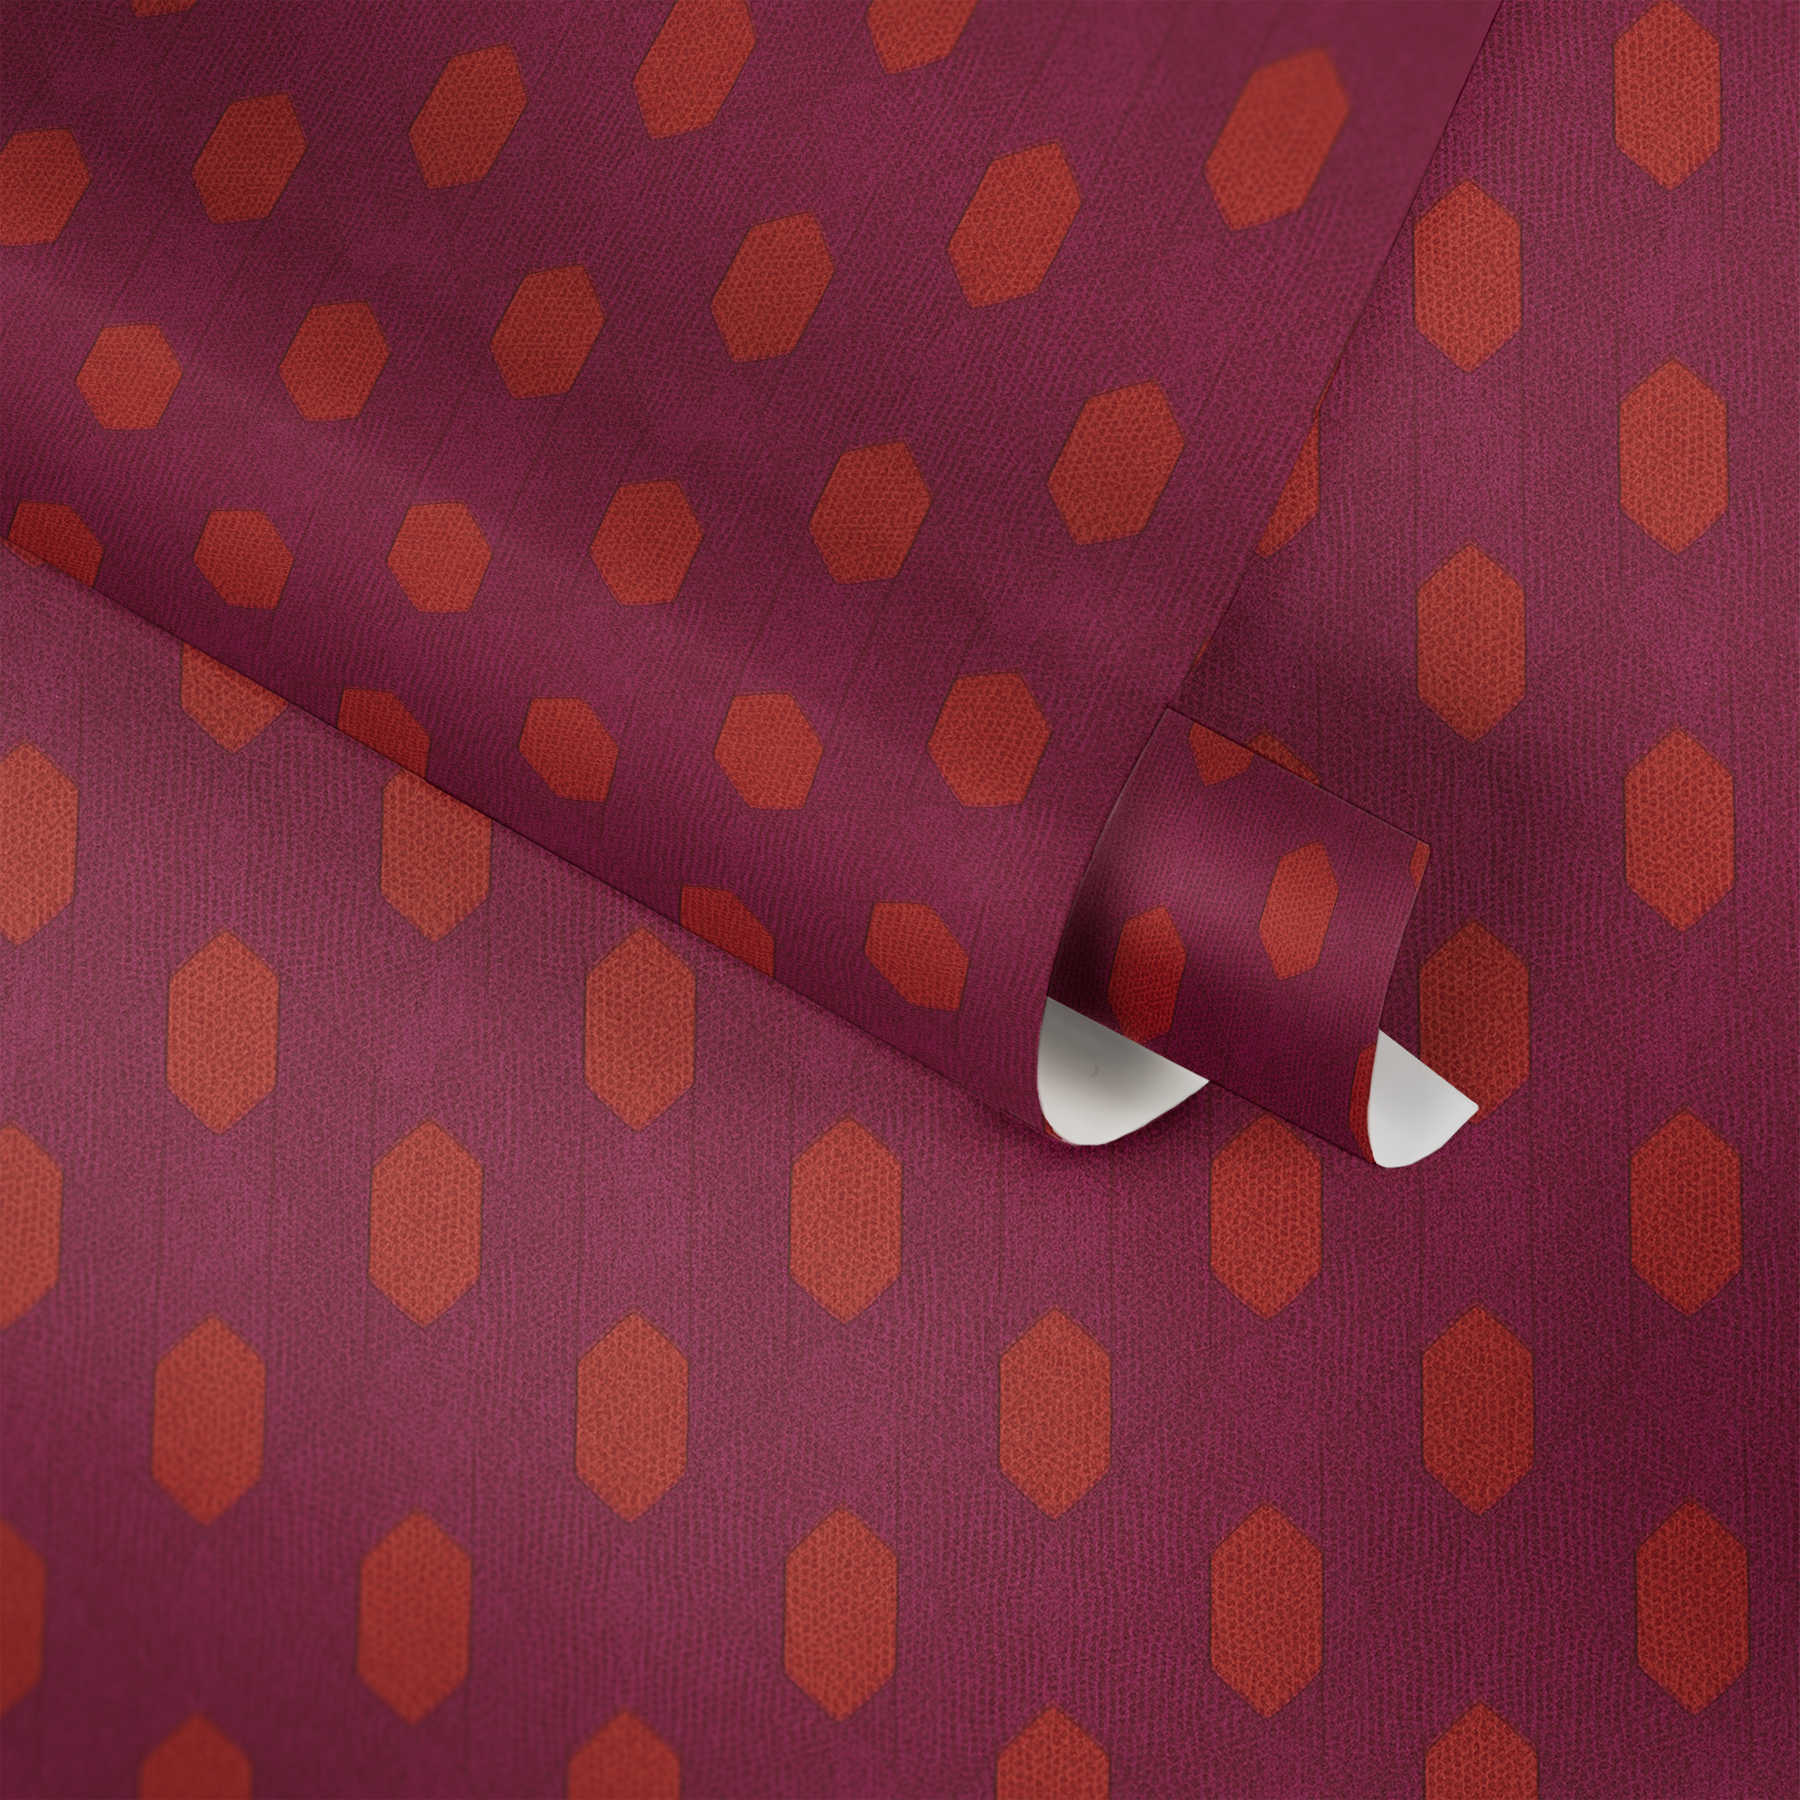             Carta da parati magenta con motivo geometrico - viola, rosso, arancione
        